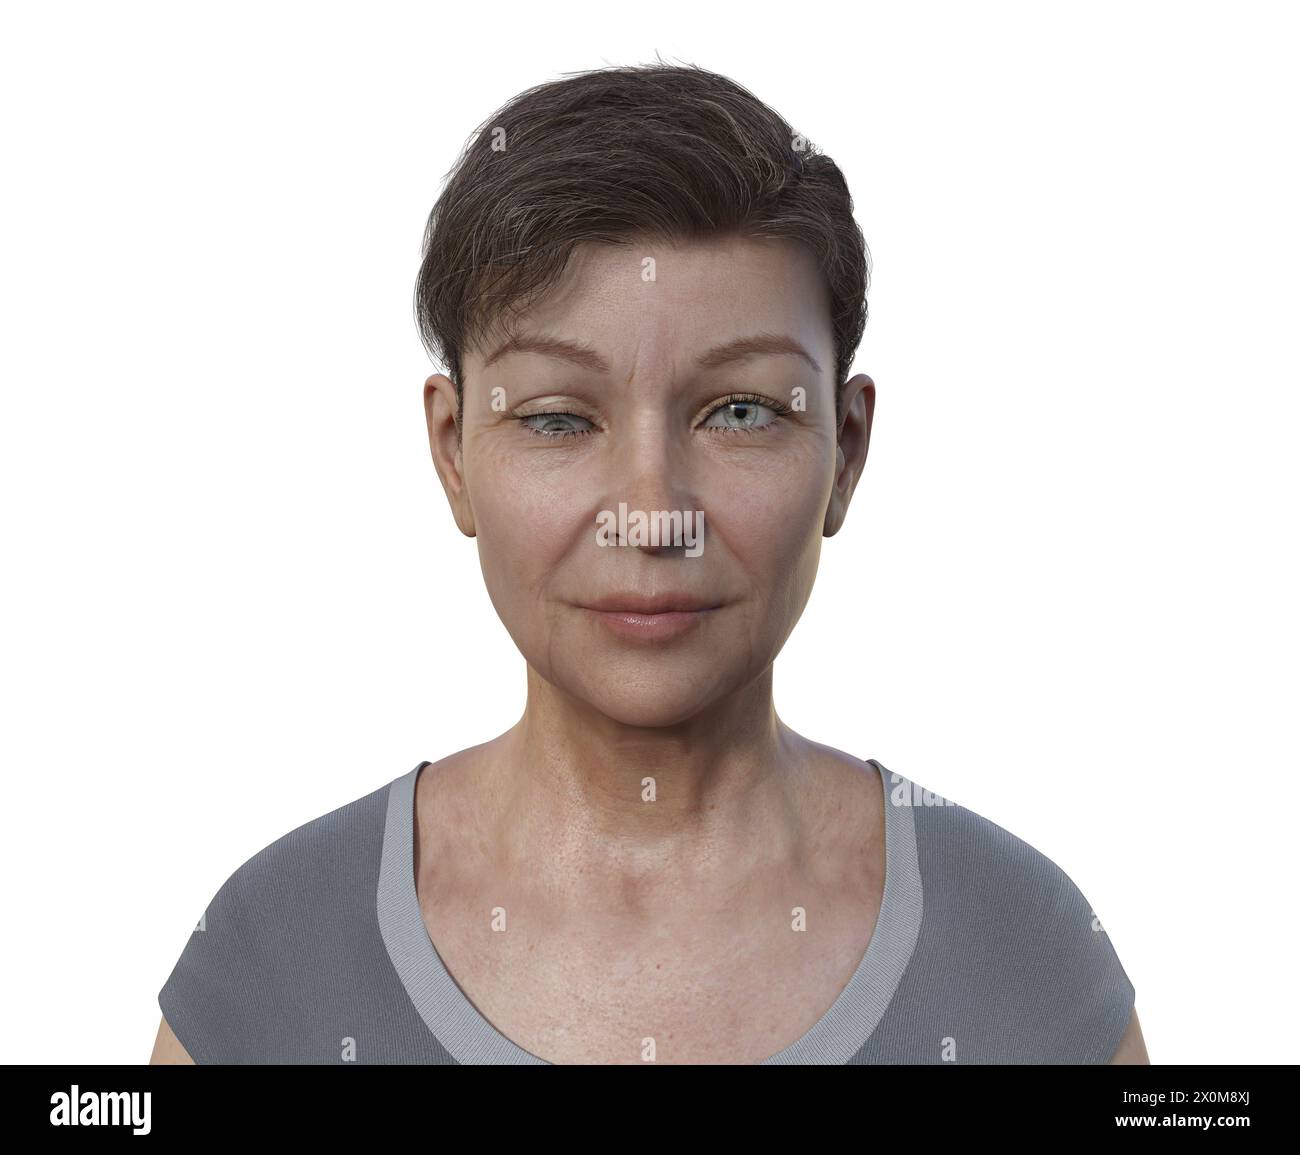 Illustration einer Hypotropie-Frau mit einer nach unten gerichteten Augenfehlstellung. Stockfoto